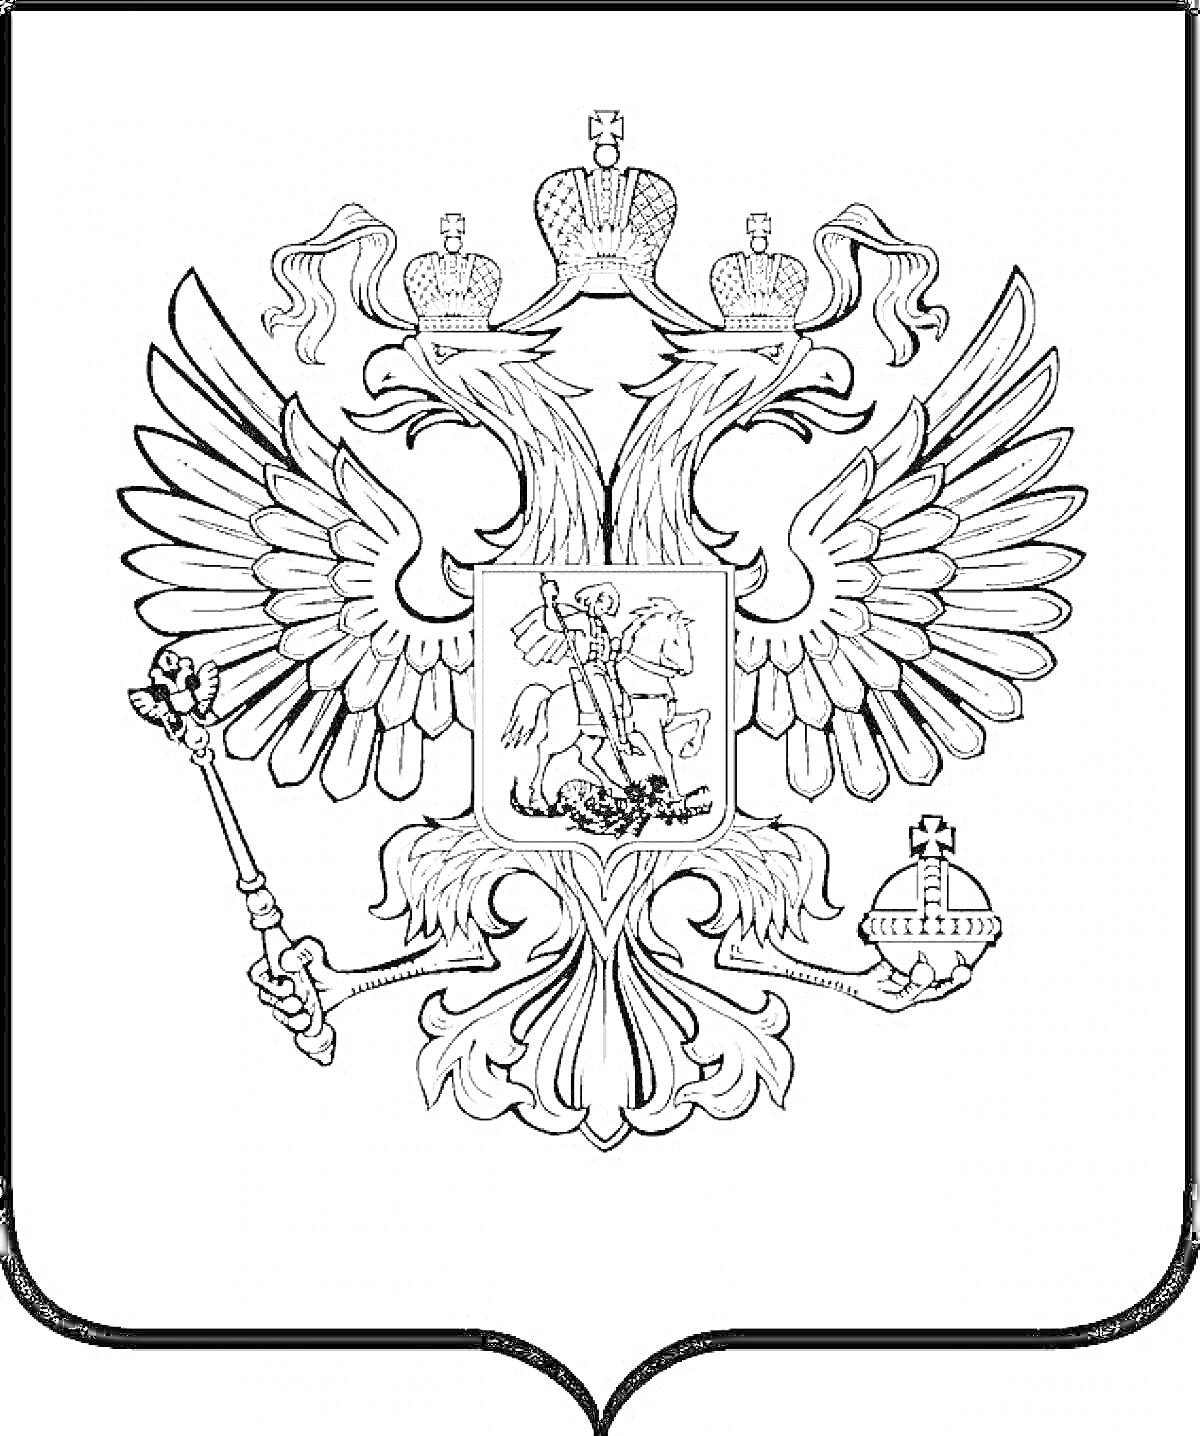 Раскраска Герб России с двуглавым орлом, держащим скипетр и державу. На груди орла расположен щит с изображением всадника на коне, поражающего копьем змея.